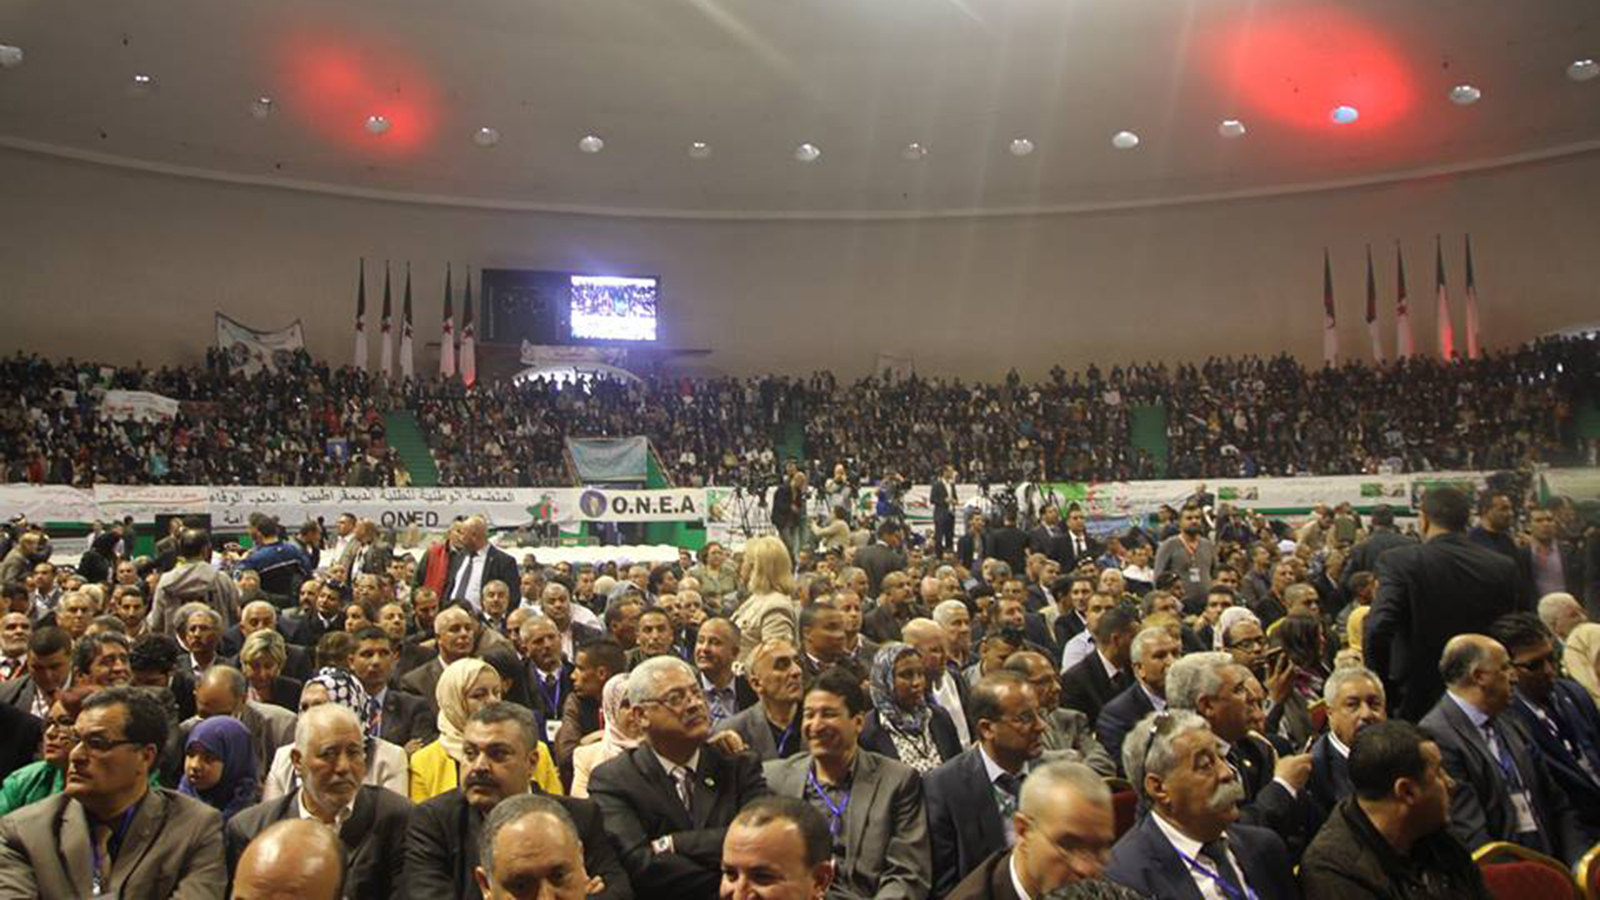 ‪تجمع للموالاة دعما للرئيس والجيش في القاعة البيضاوية بالعاصمة الجزائرية‬ (الجزيرة)